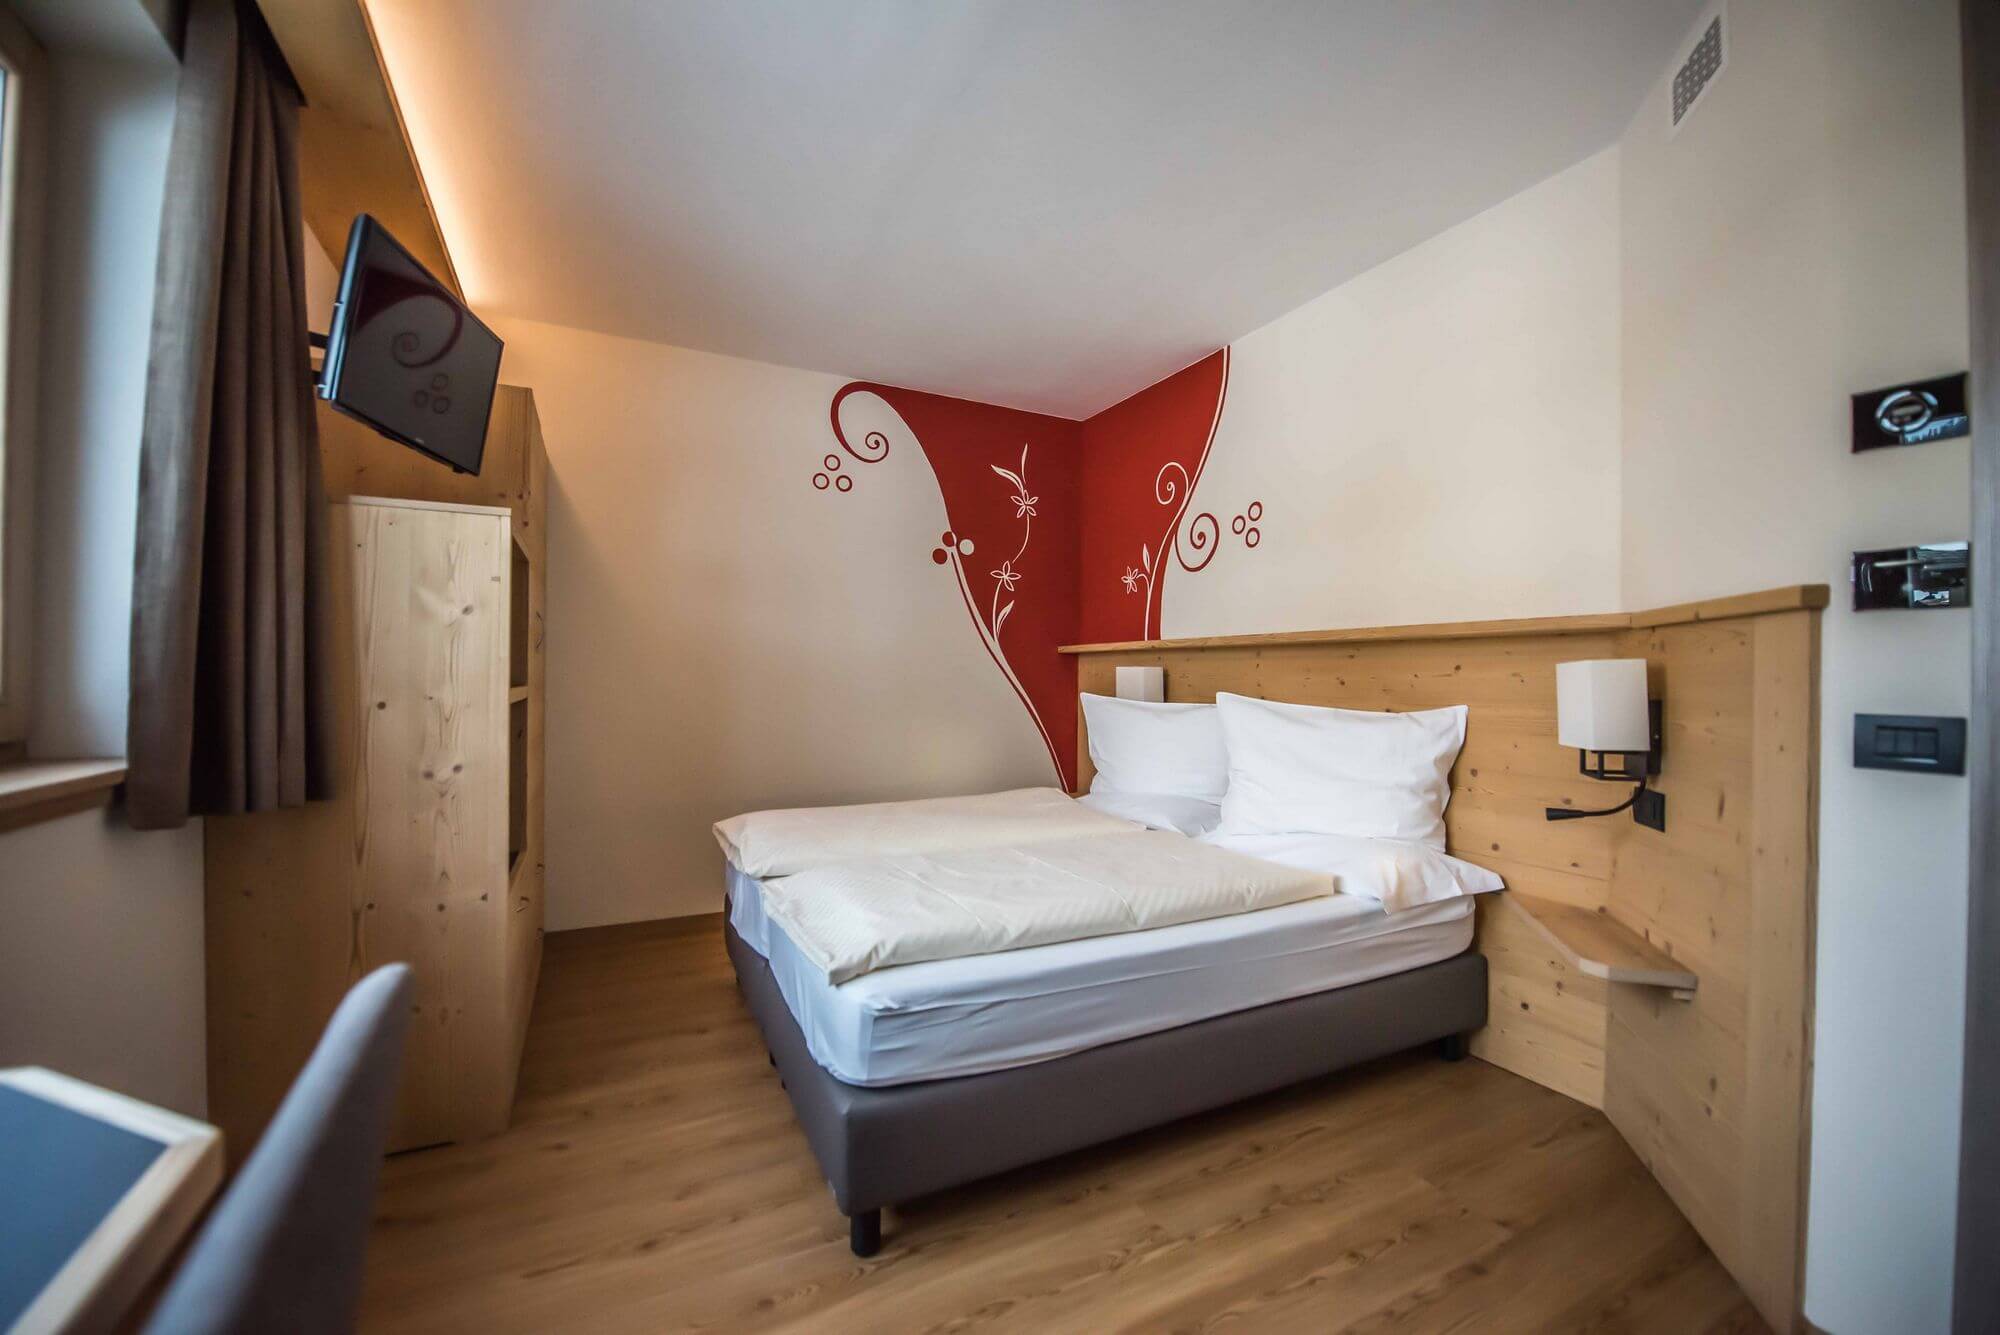 Decorazioni murali nella Camera Economy: Hotel Le Alpi a Livigno